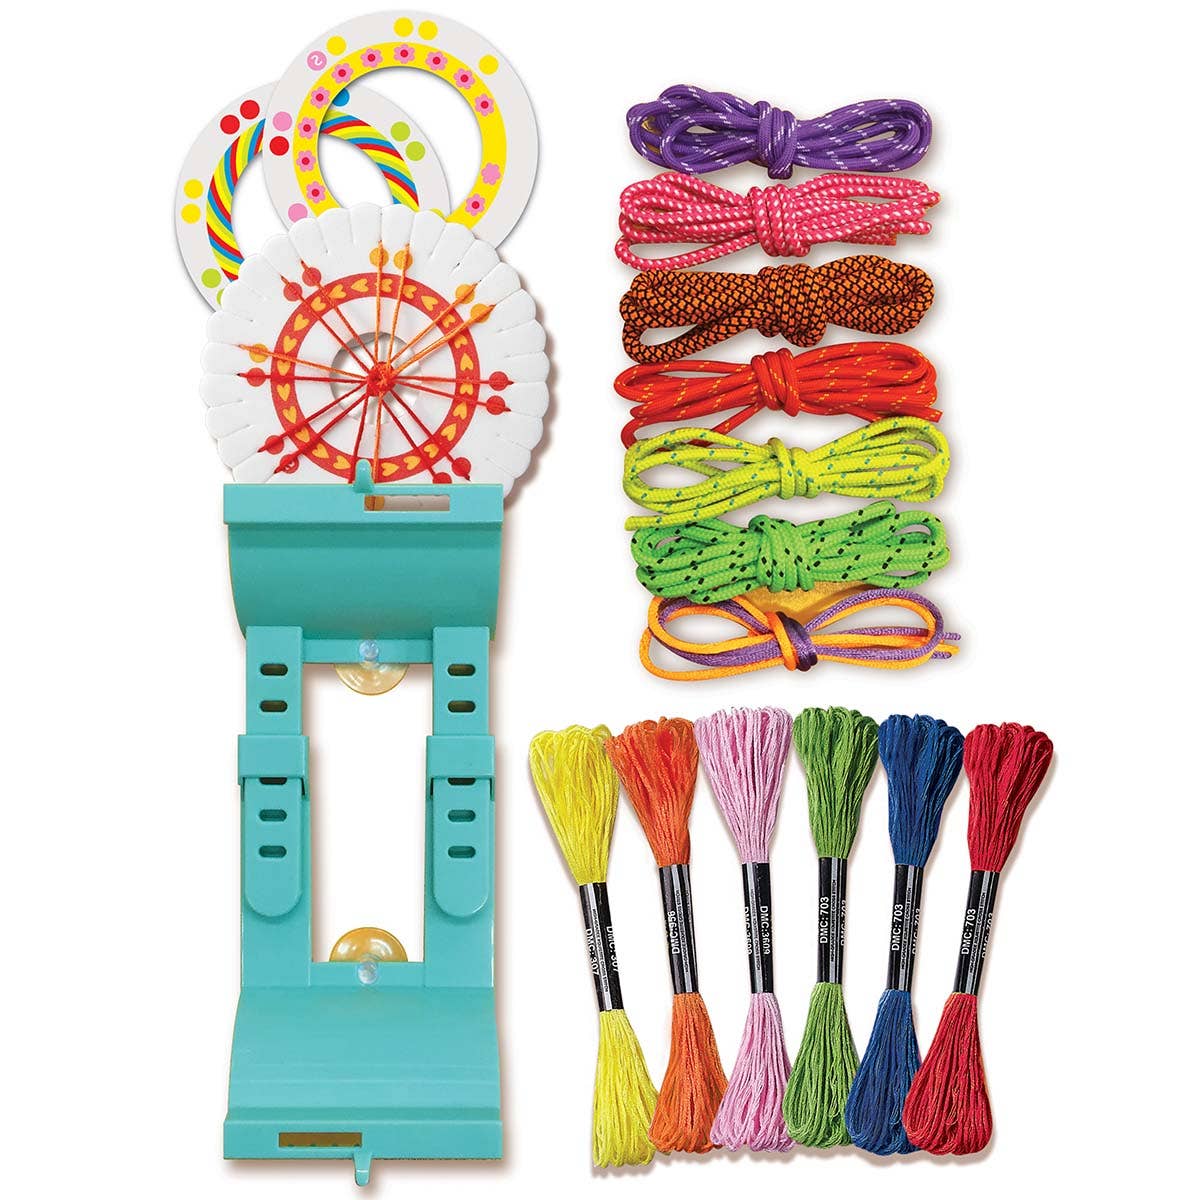 4M Kidzmaker Friendship Bracelet Kit-DIY for Kids